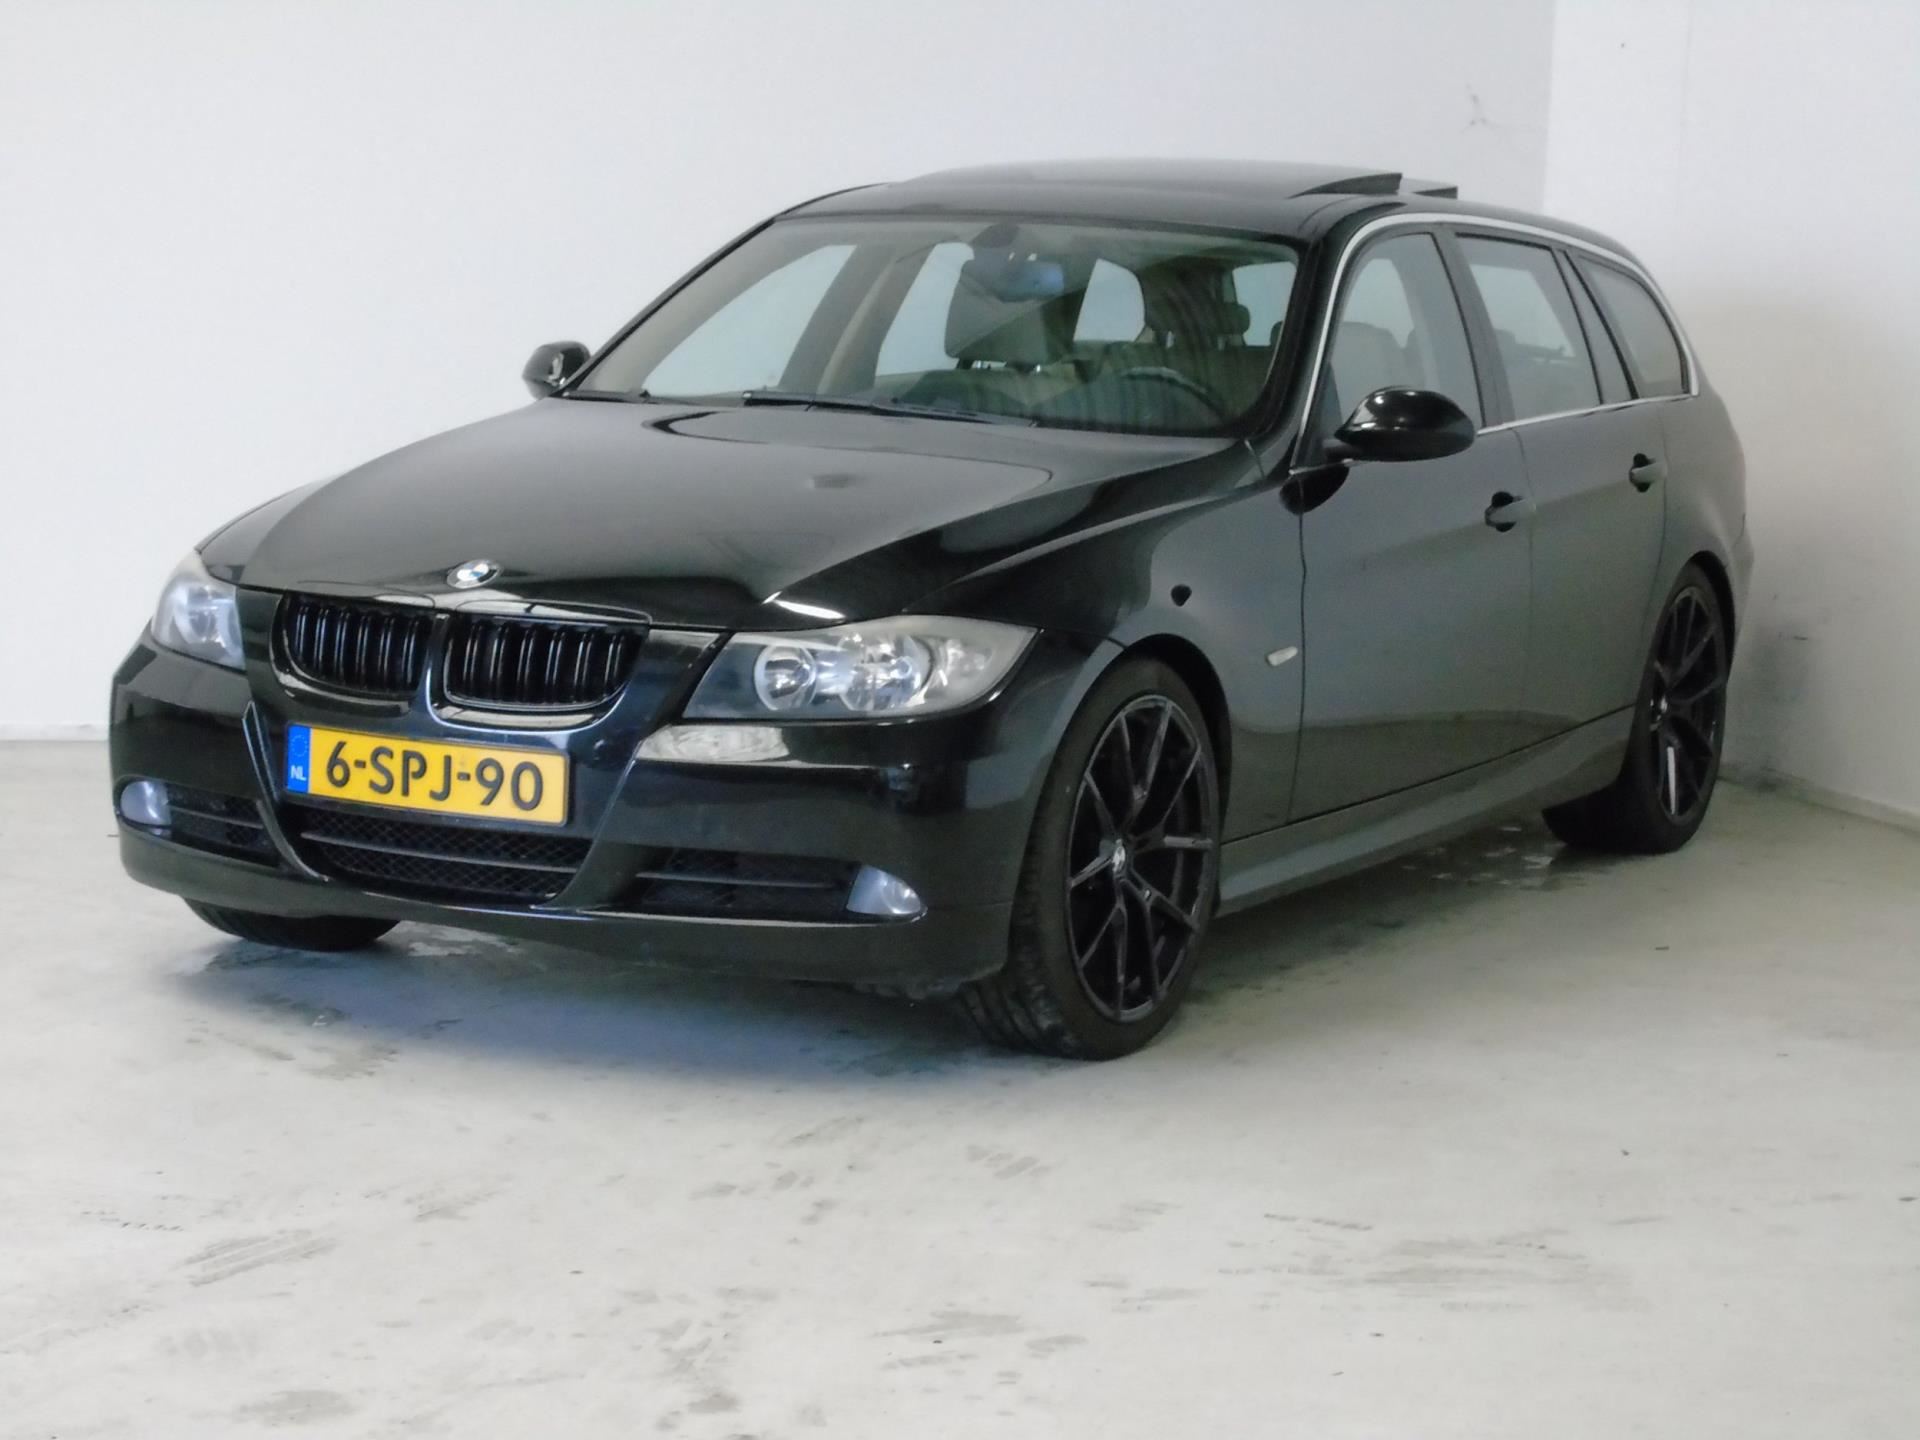 BMW 3-serie Touring occasion - van Dijk auto's